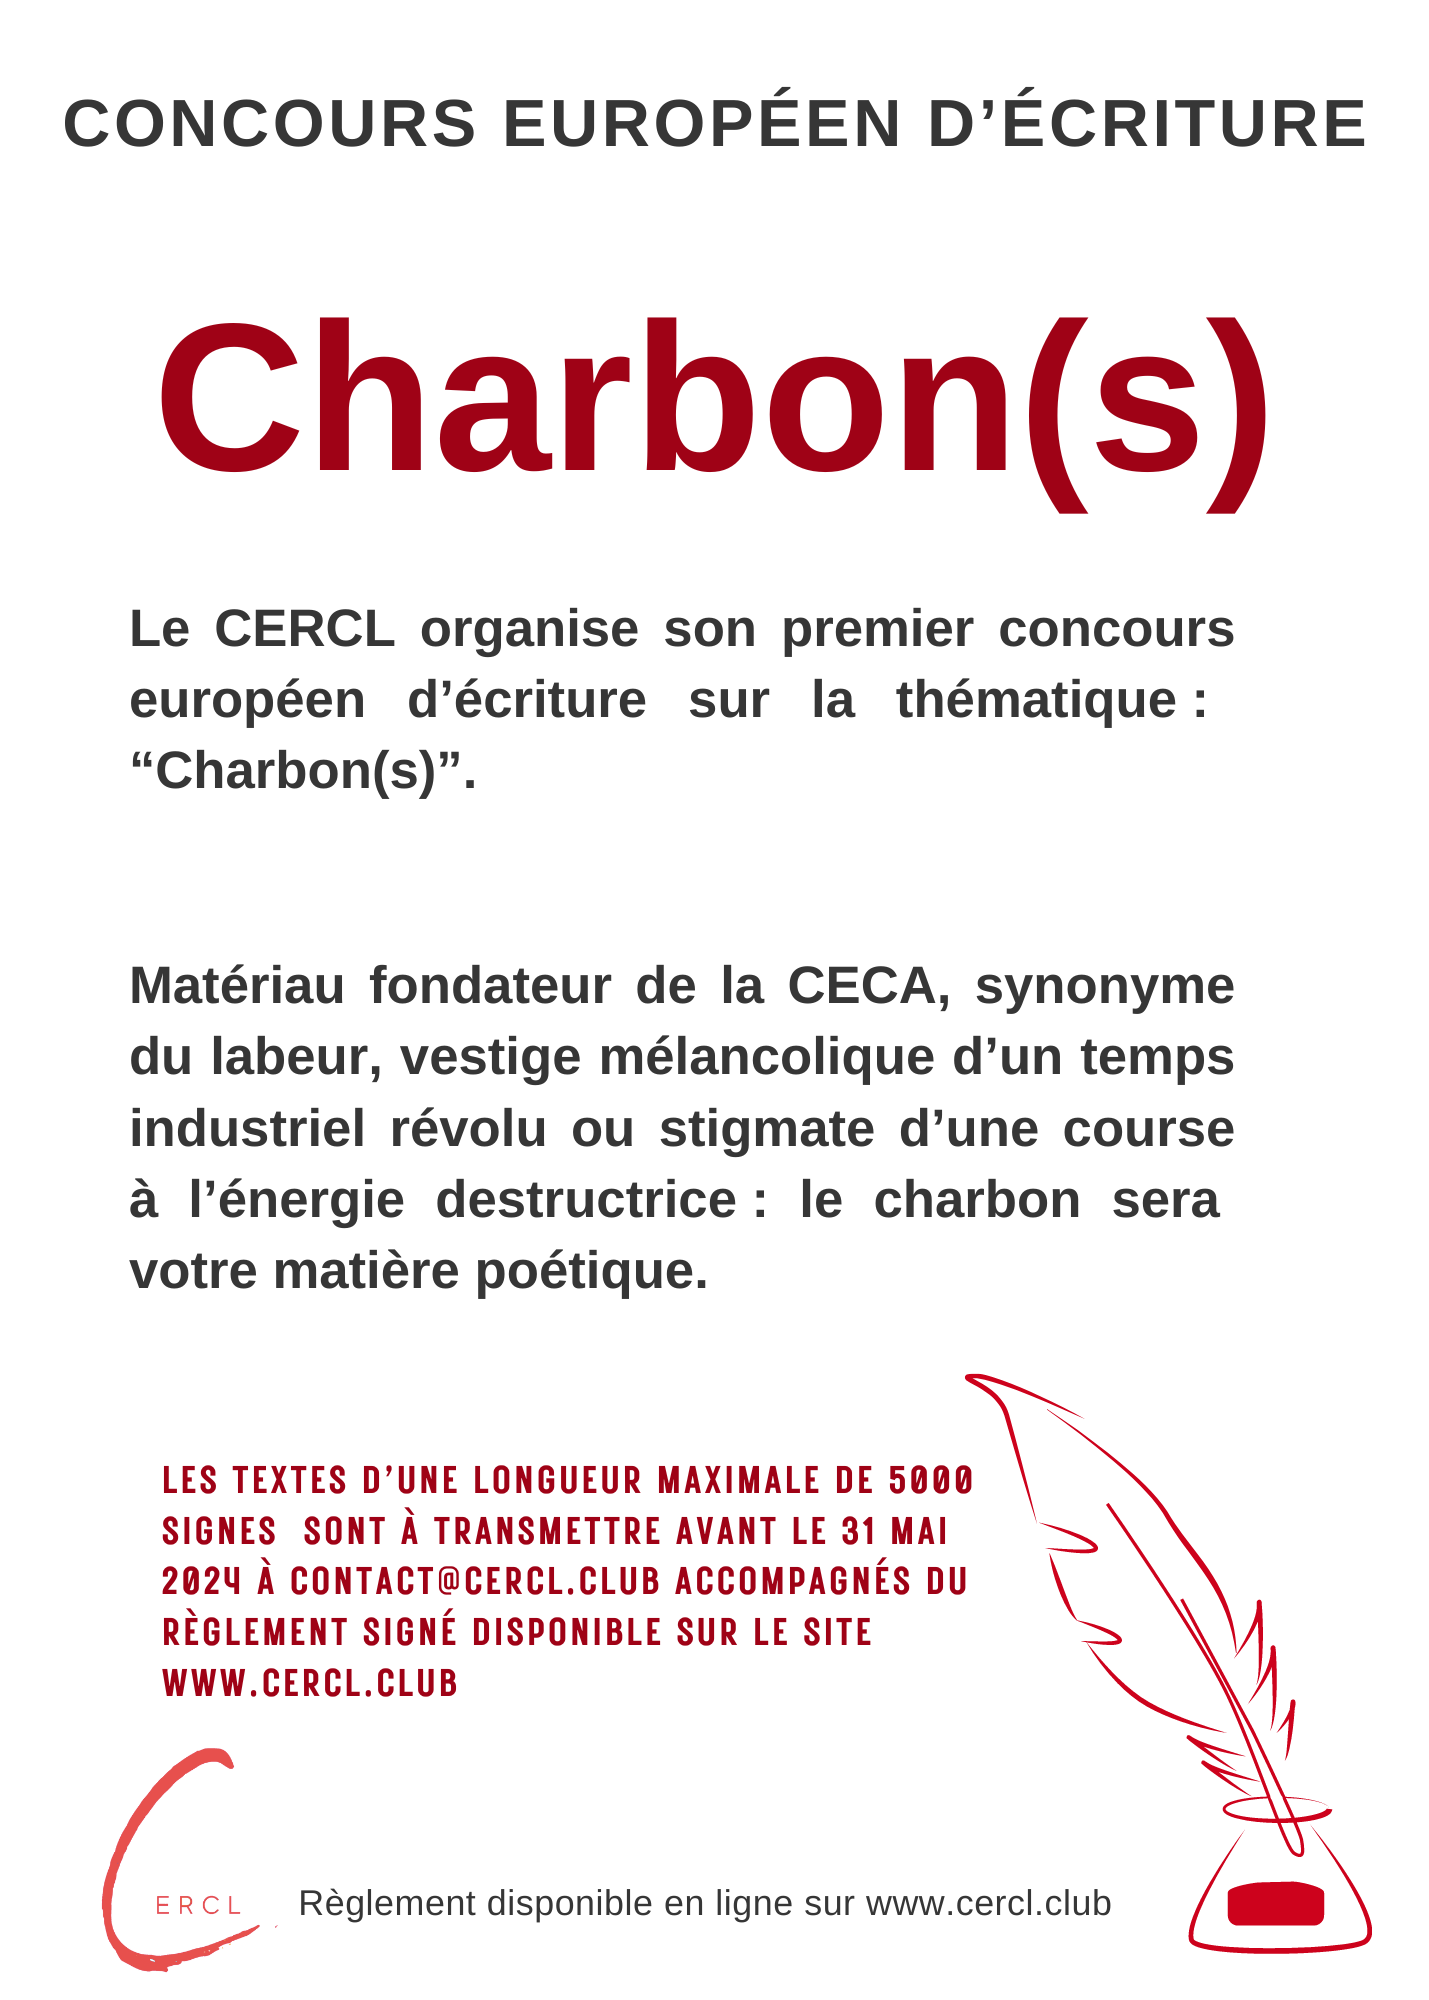 Concours européen d’écriture : « Charbon(s) » / European writing contest : « Coal(s) »